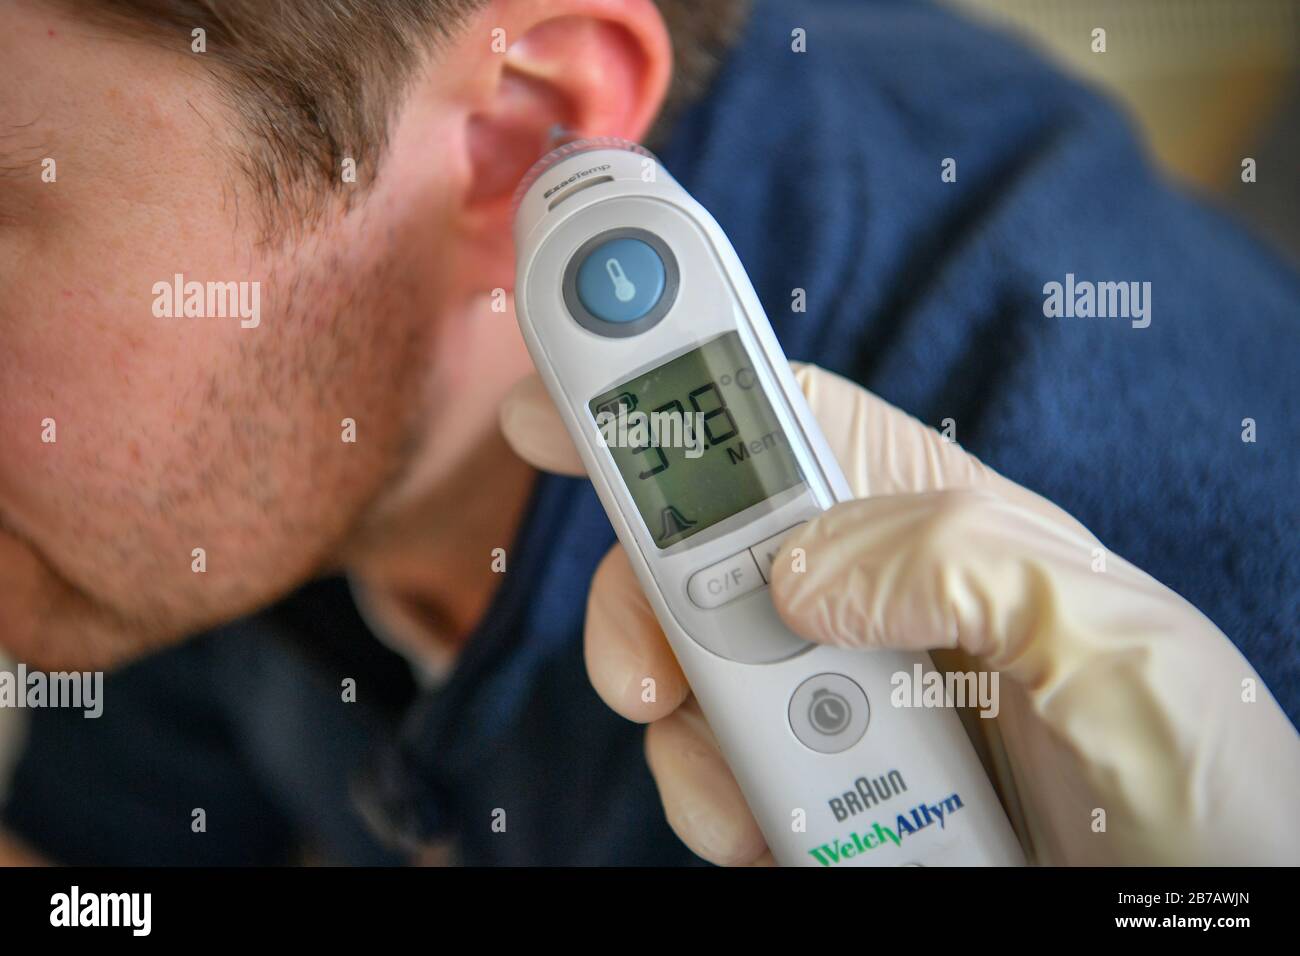 Image POSÉE PAR MODELA température corporelle de 37,8 degrés Celsius est  enregistrée sur un homme à l'aide d'un thermomètre tympanique. Photo PA.  Date De L'Image: Samedi 14 Mars 2020. Crédit photo devrait